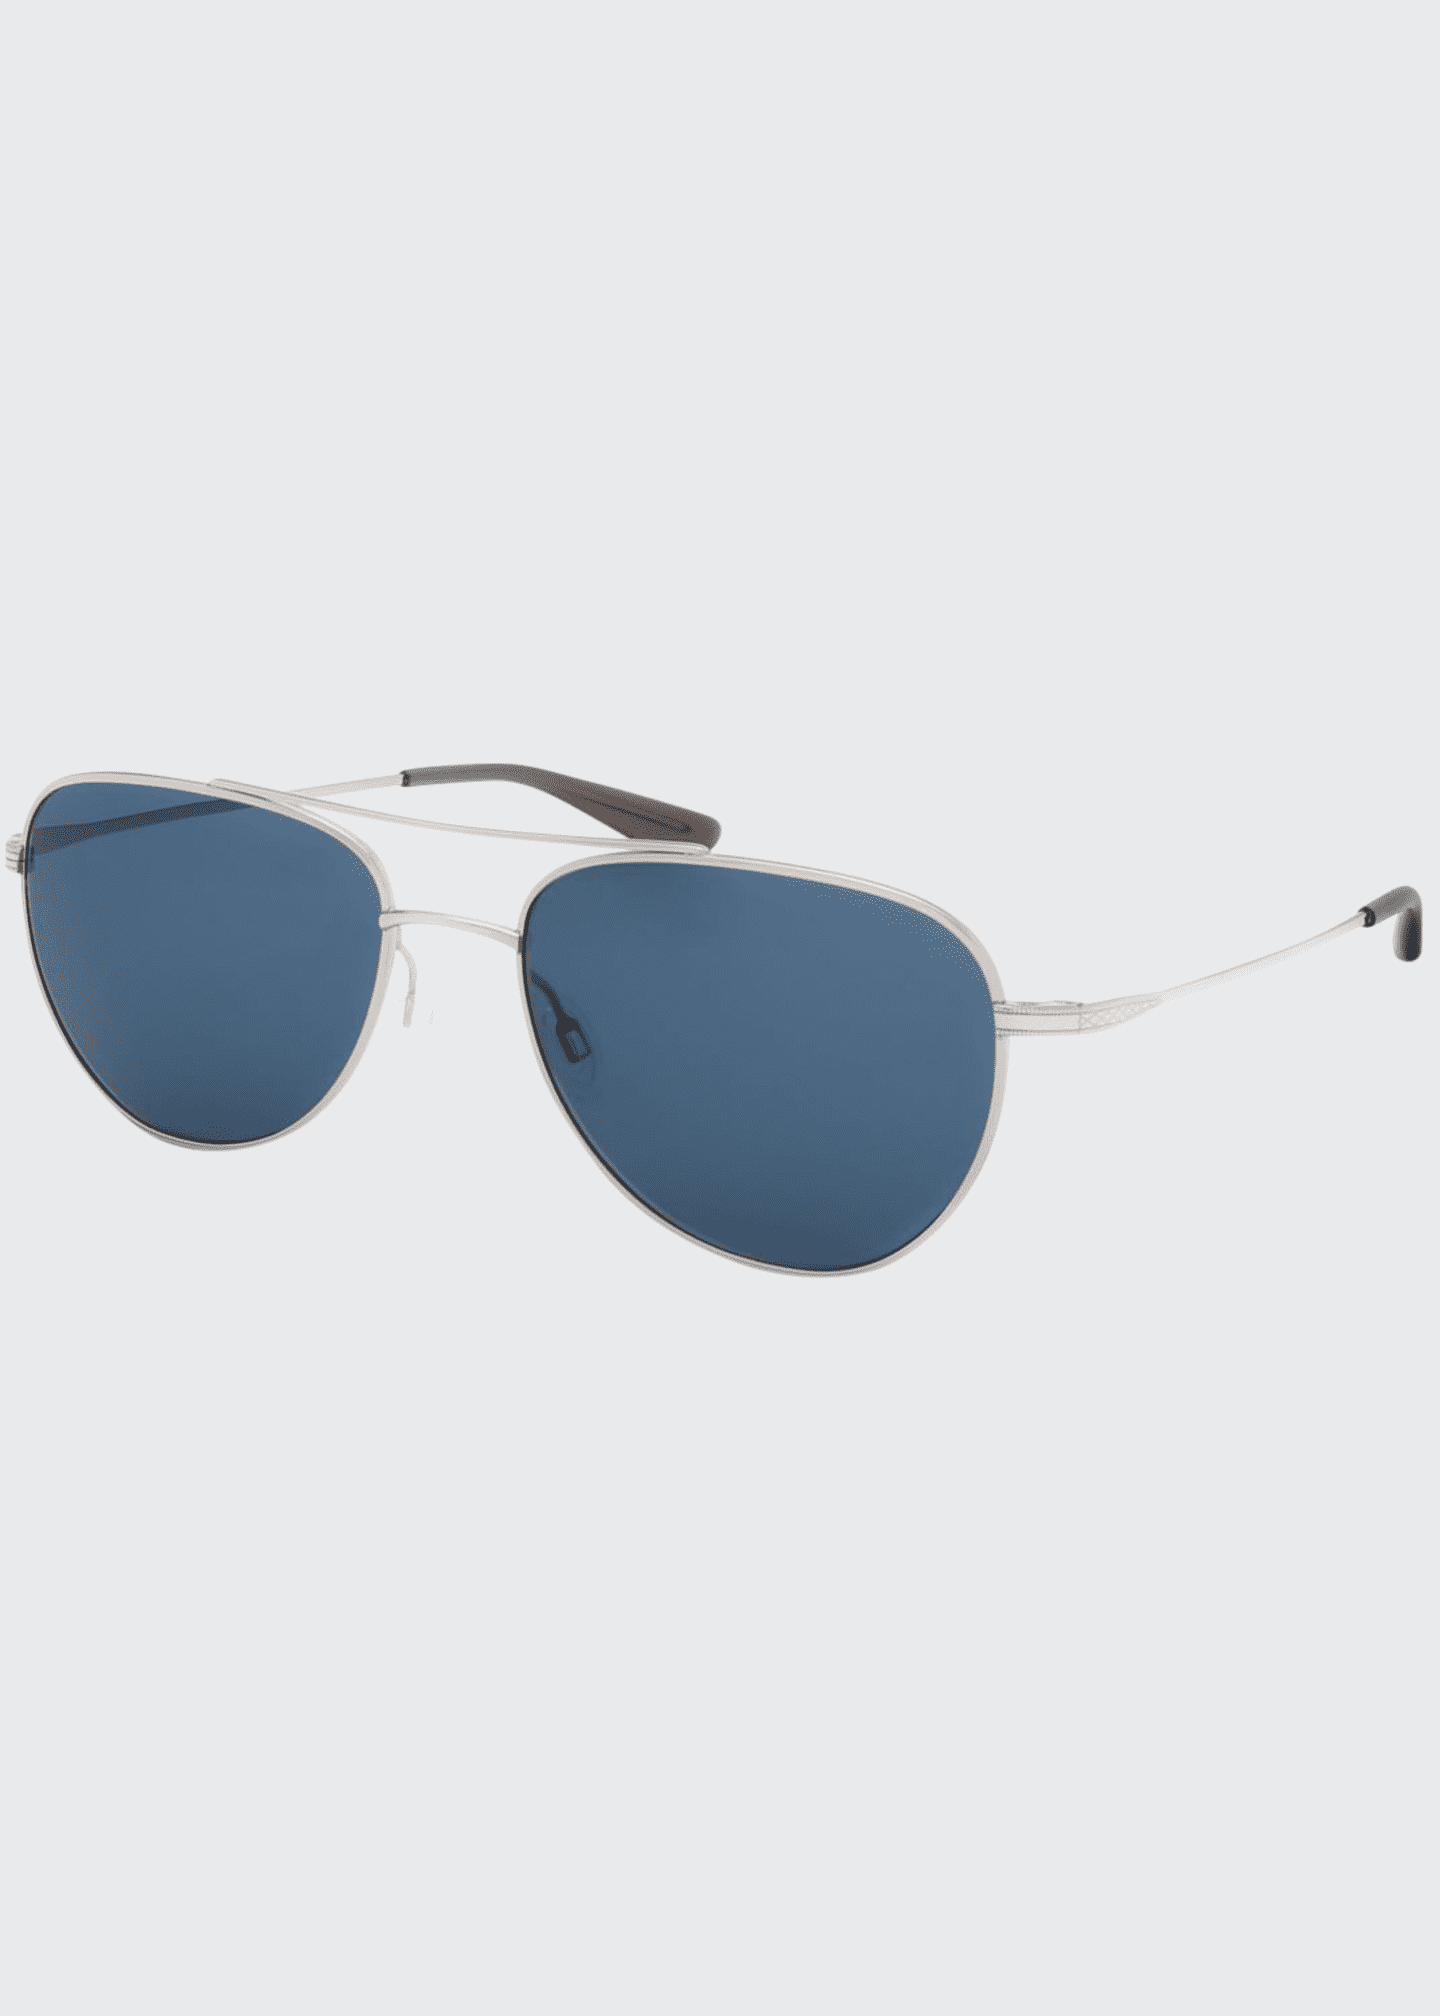 Barton Perreira Men's Aerial Metal Aviator Sunglasses - Bergdorf Goodman